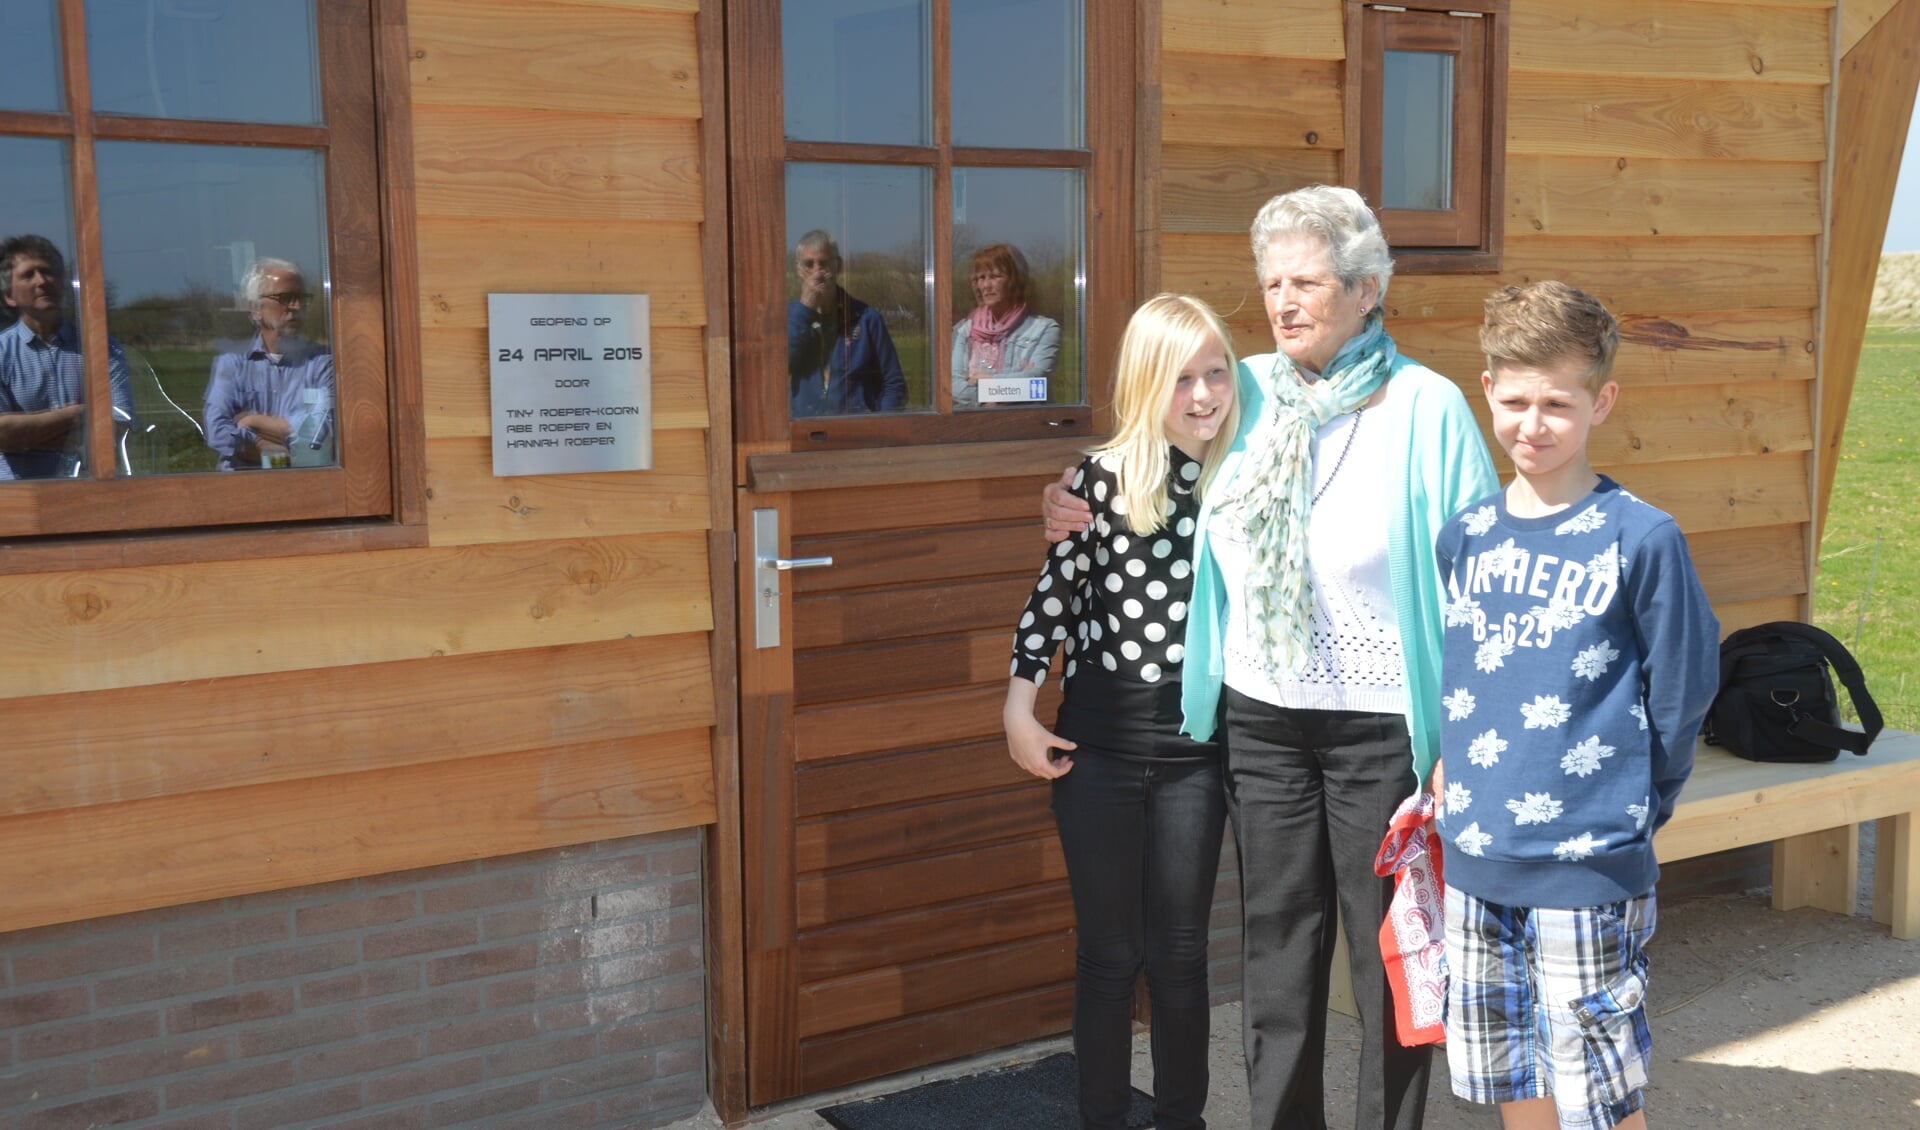 De opening van de stal werd verricht door Tiny Roeper-Koorn en haar kleinkinderen Abe en Hannah.